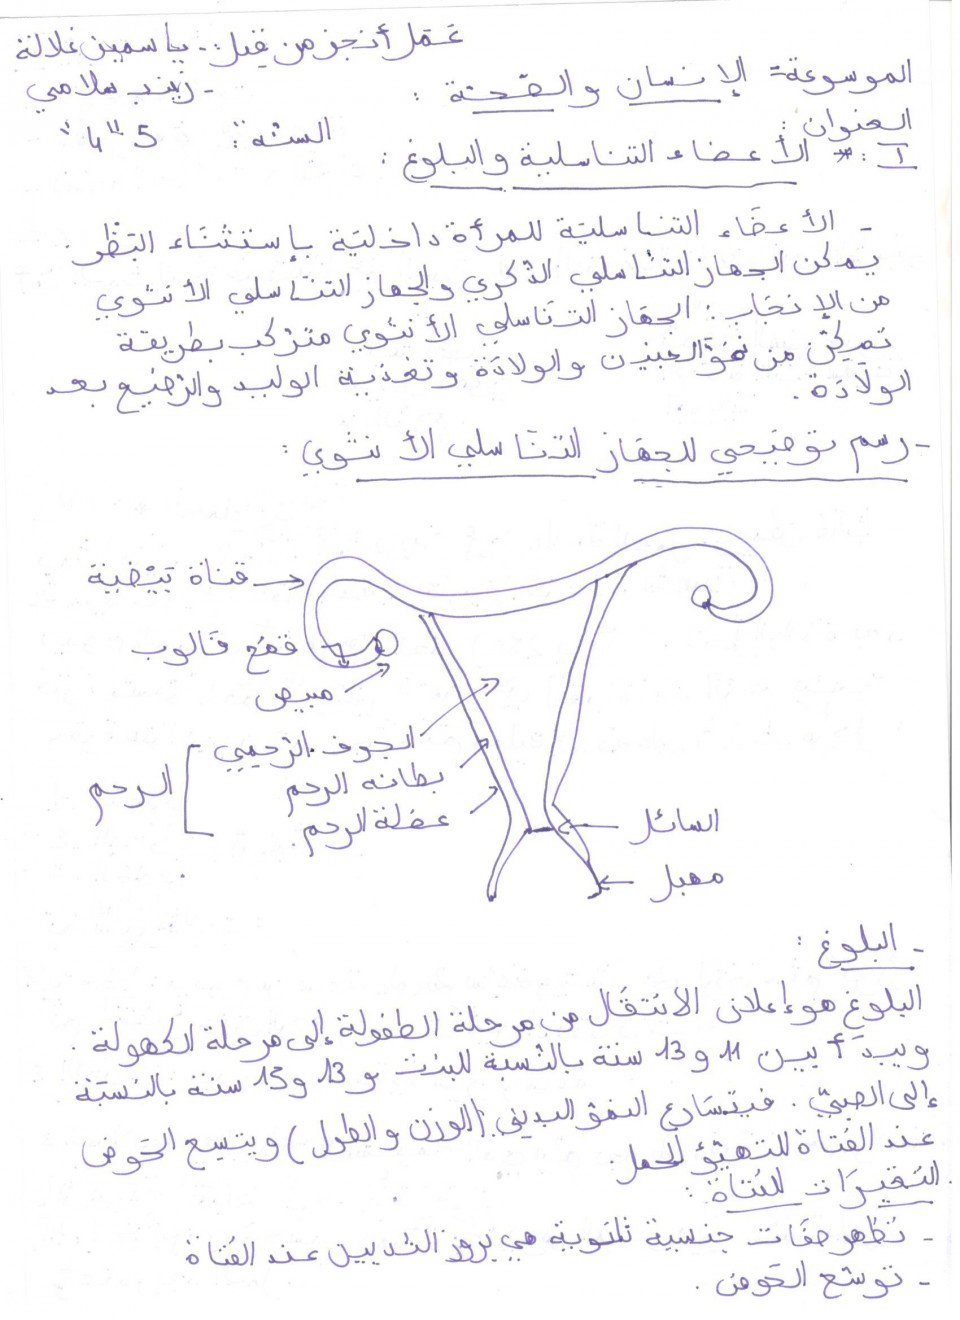 La 5e 4 découvre les nouvelles encyclopédies en langue arabe